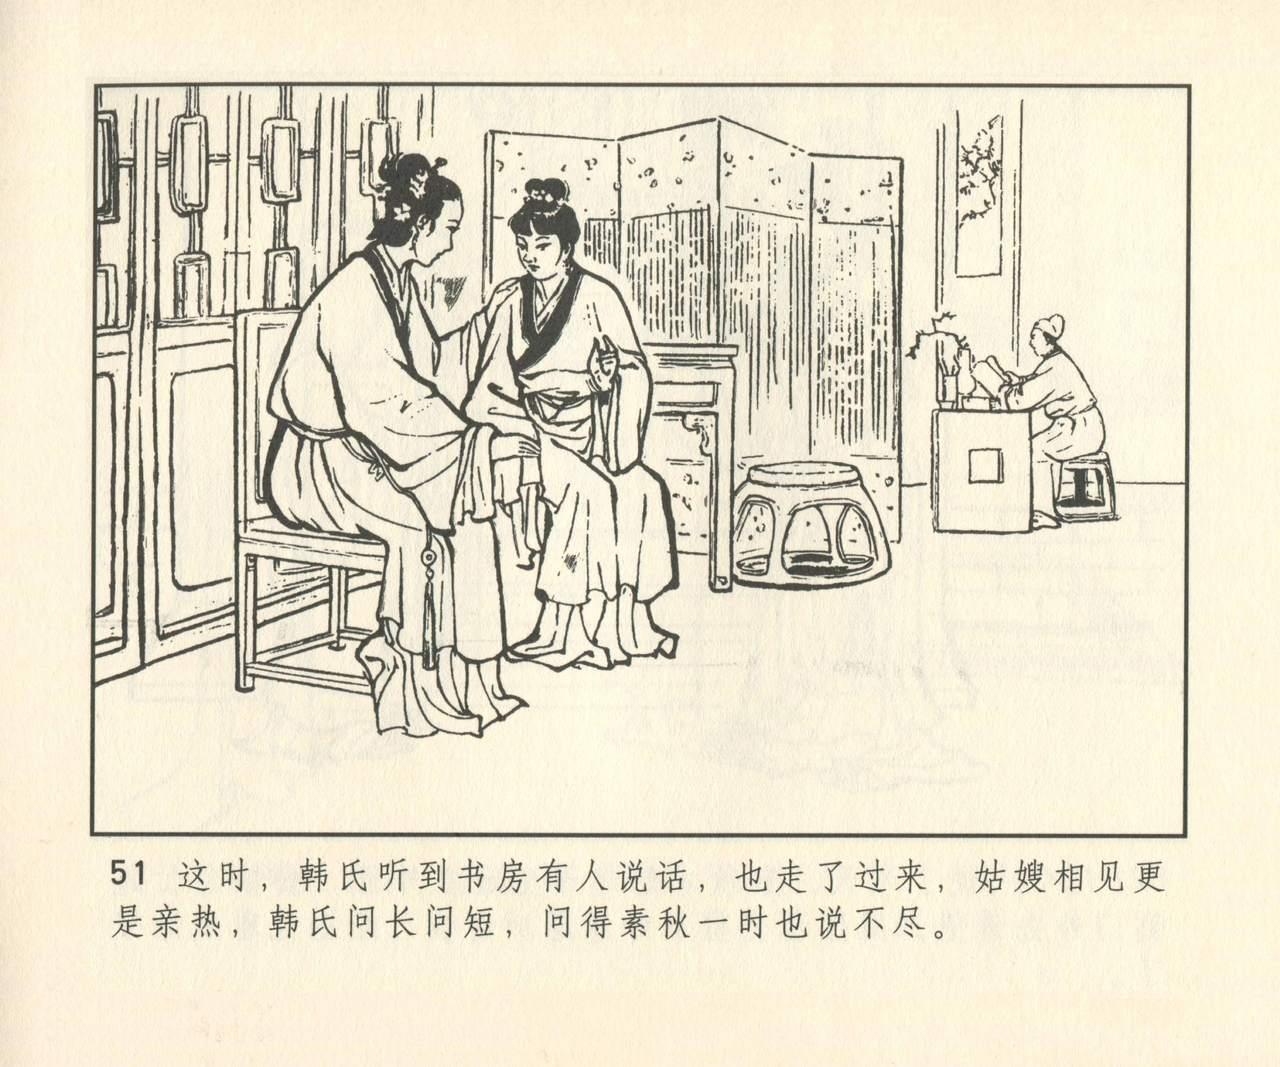 聊斋志异 张玮等绘 天津人民美术出版社 卷二十一 ~ 三十 331